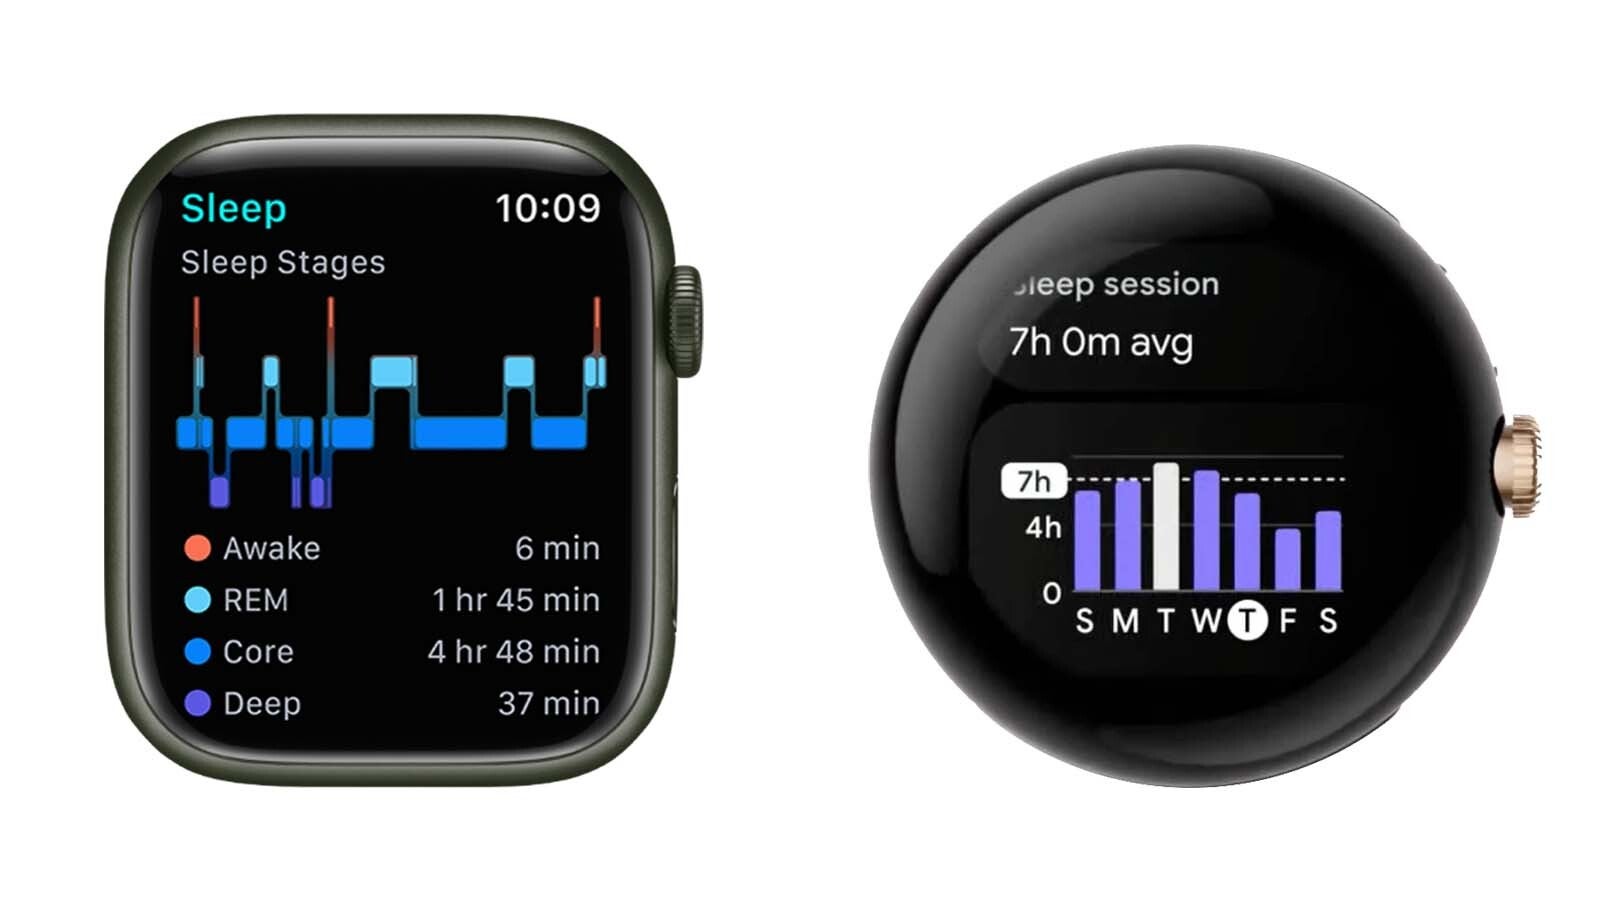 Comparaison de l'interface Apple Watch vs Pixel Watch - Les smartwatches rondes sont-elles terriblement peu pratiques ?  Pourquoi l'Apple Watch rectangulaire a bien plus de sens